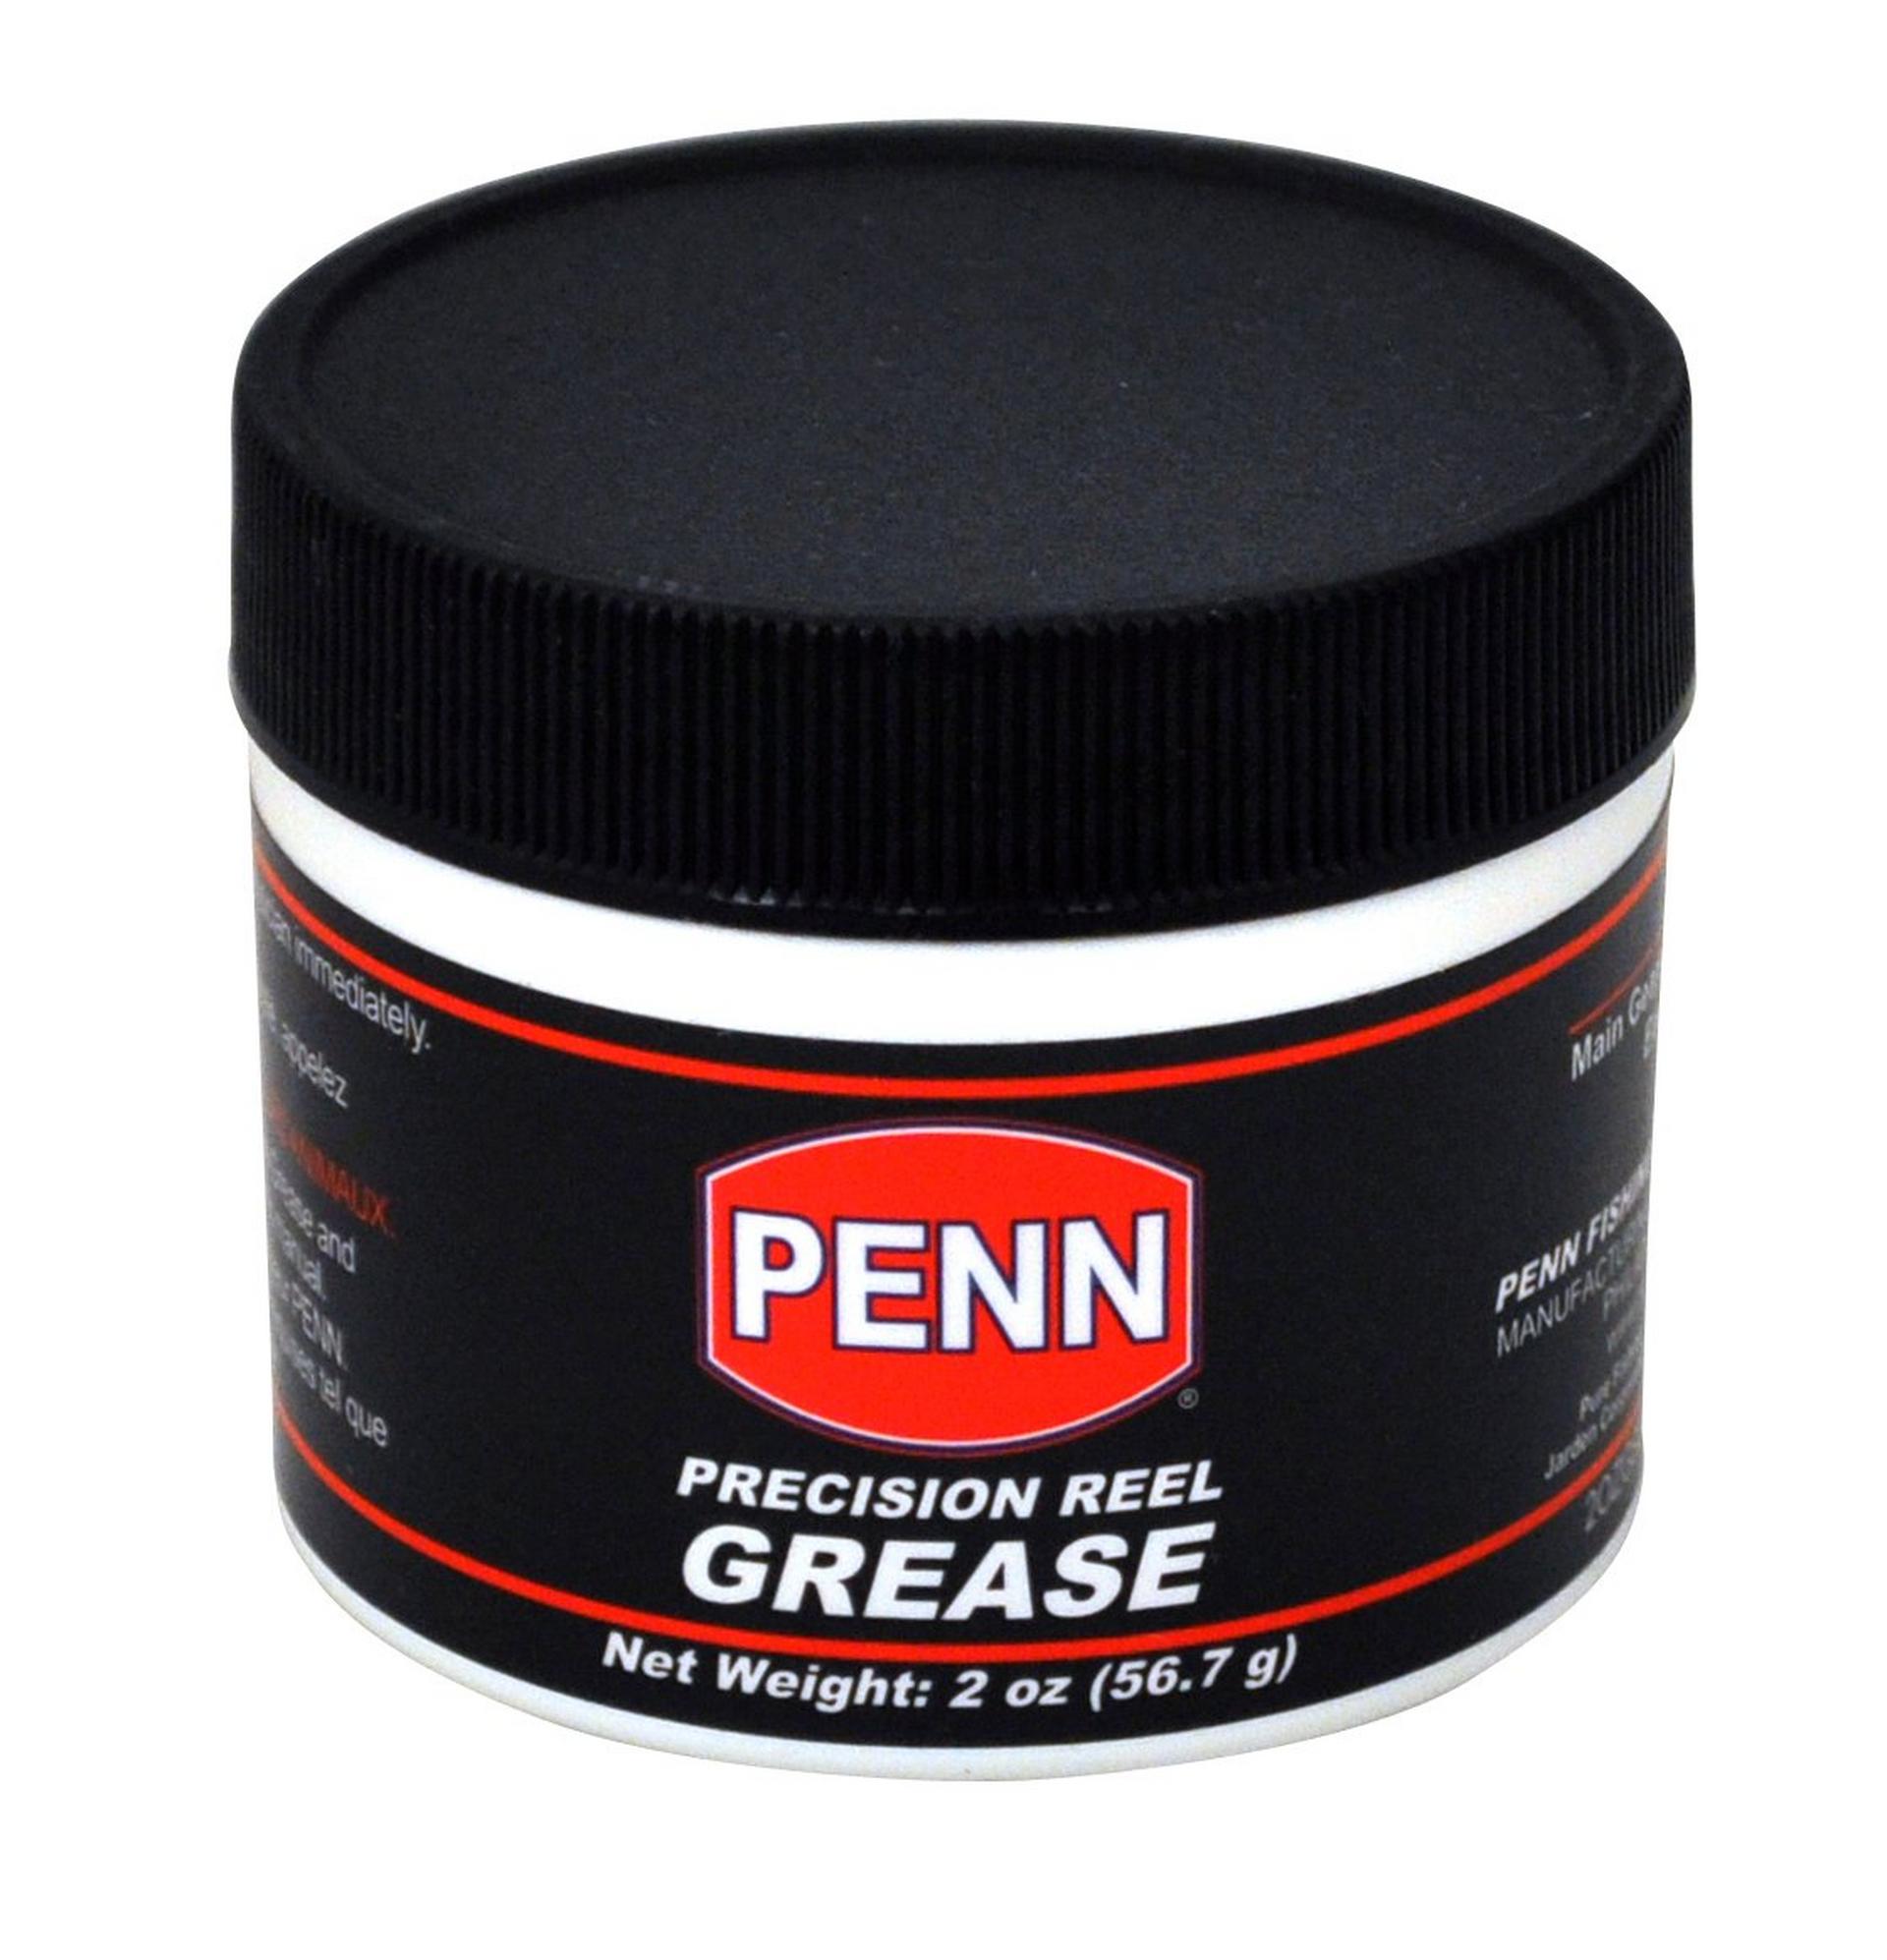 Oil, Grease & Cleaner – PENN® Fishing